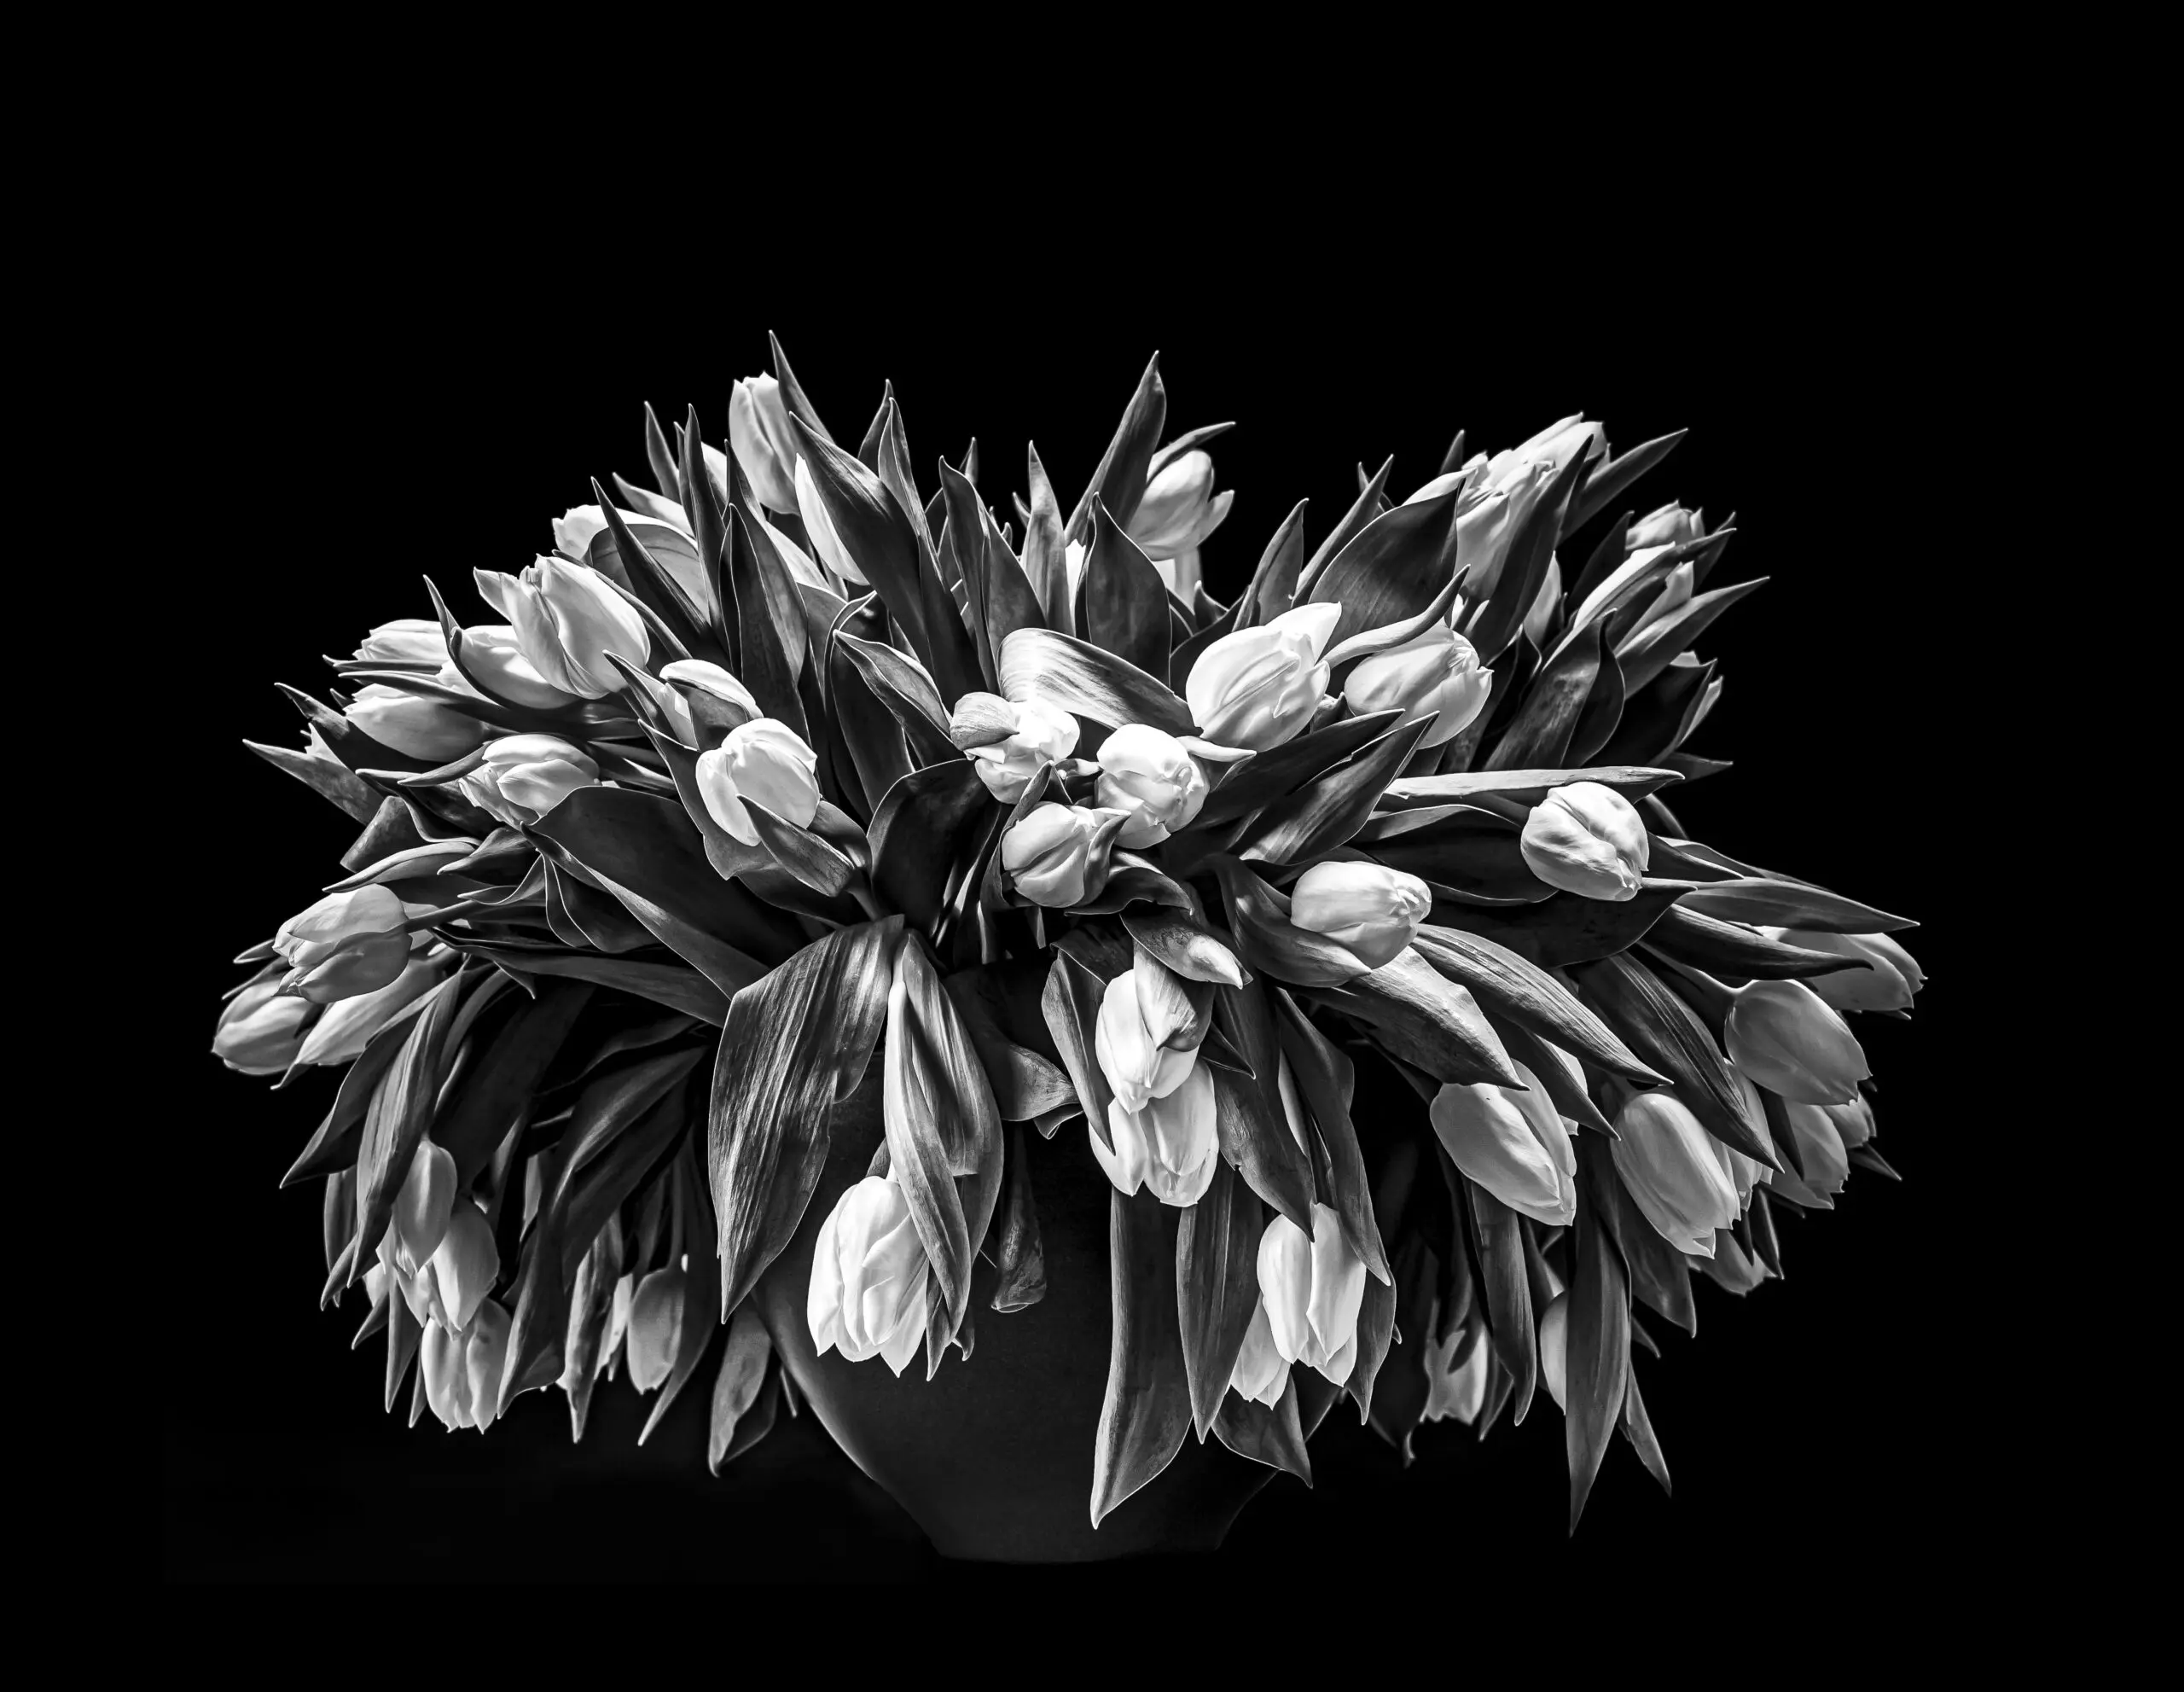 Wandbild (6161) Tulpenstrauß in schwarz-weiß präsentiert: Stillleben,Kreatives,Details und Strukturen,Pflanzen